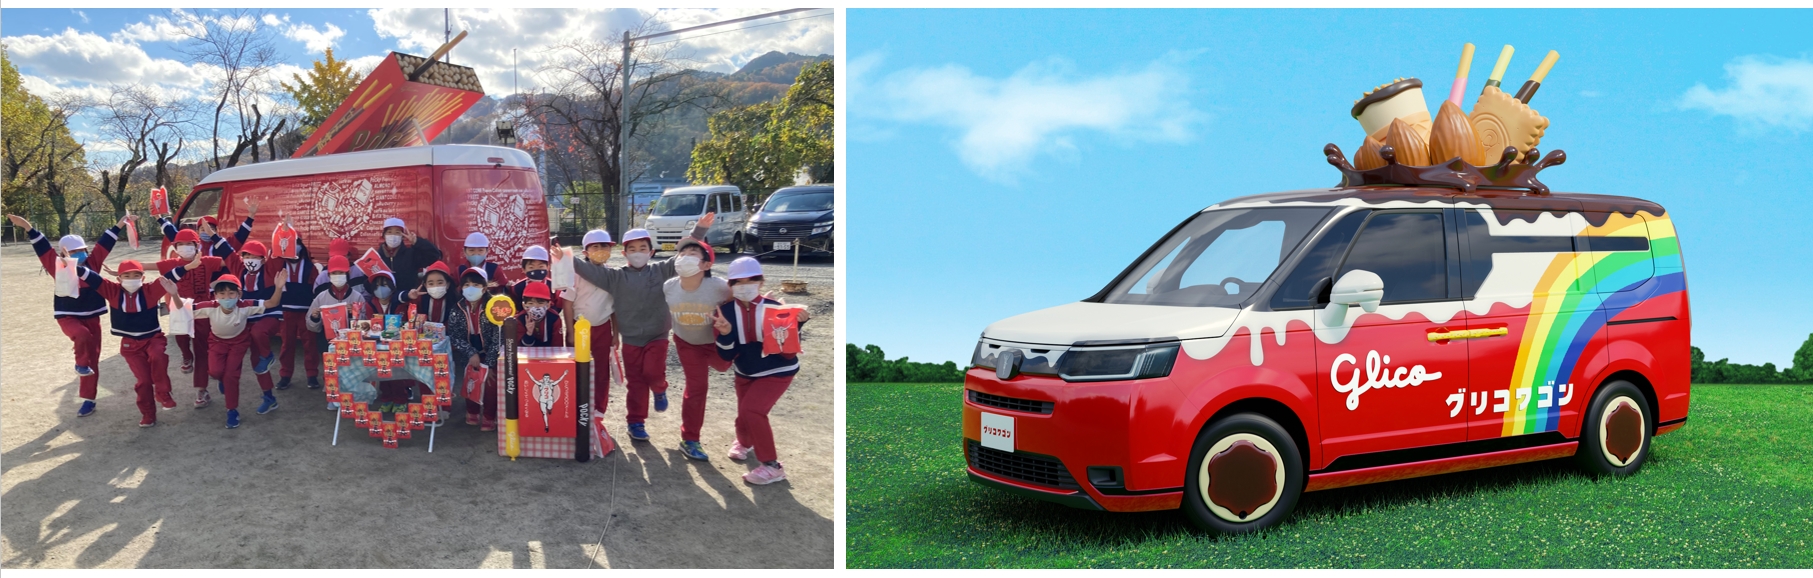 釜石市のこども園の活動の際の子供たちの写真と、2代目グリコワゴンの写真